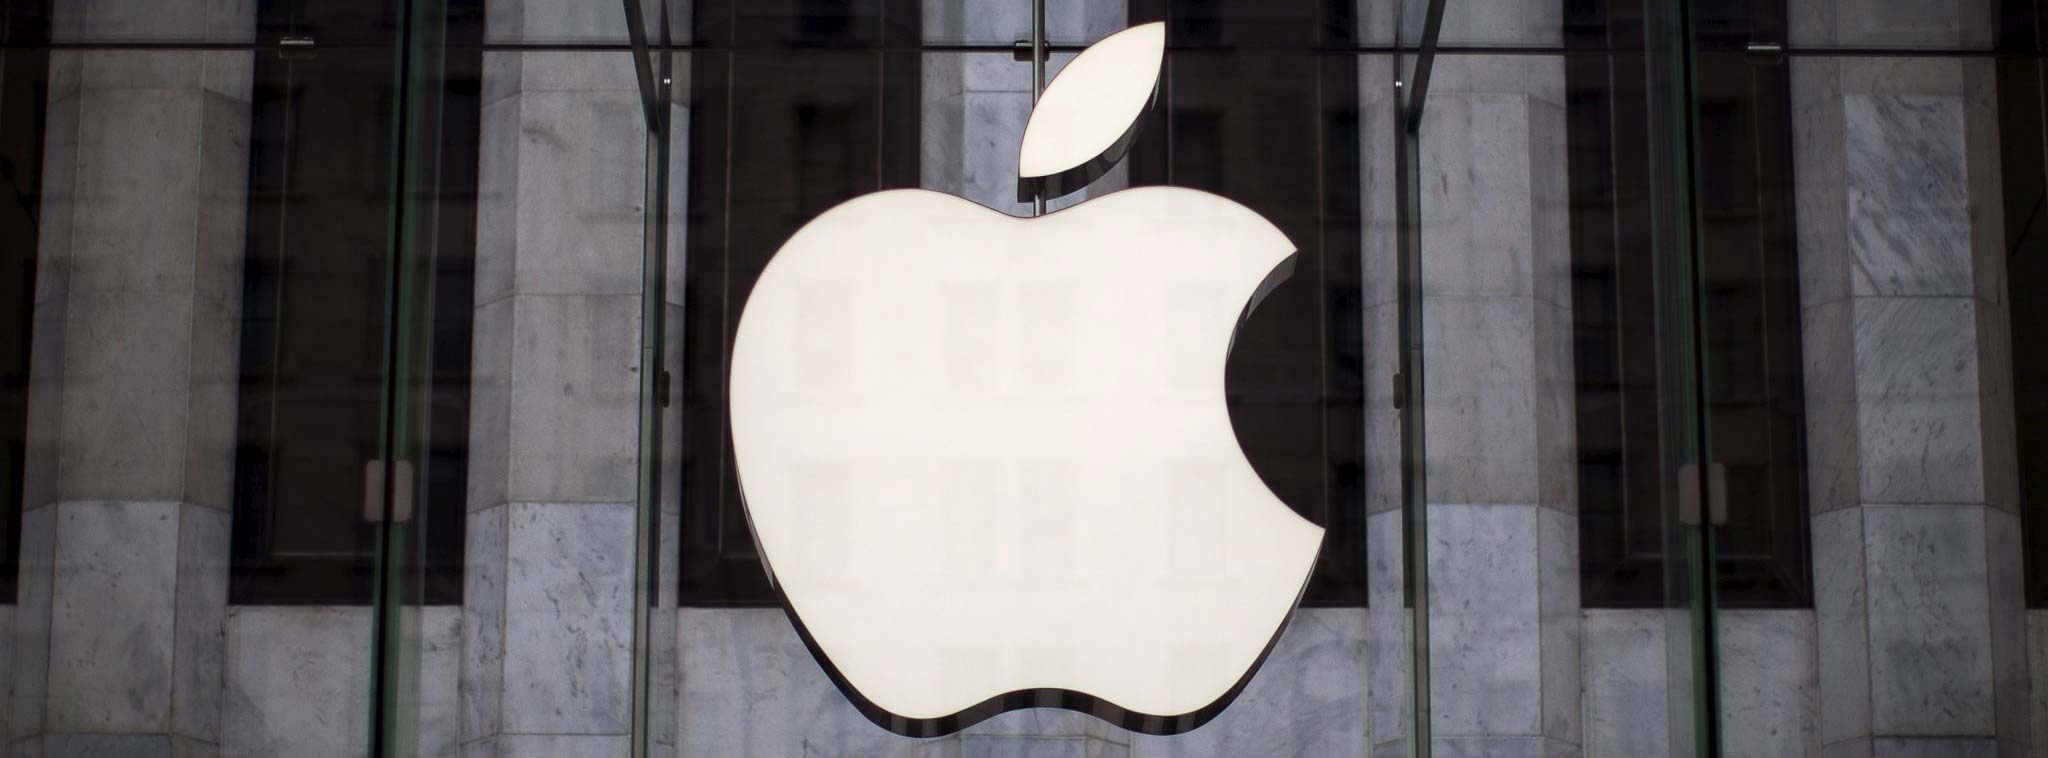 Cổ phiếu Apple đạt mức kỷ lục, trên đà trở thành công ty đầu tiên thế giới có giá trị 1000 tỷ đô